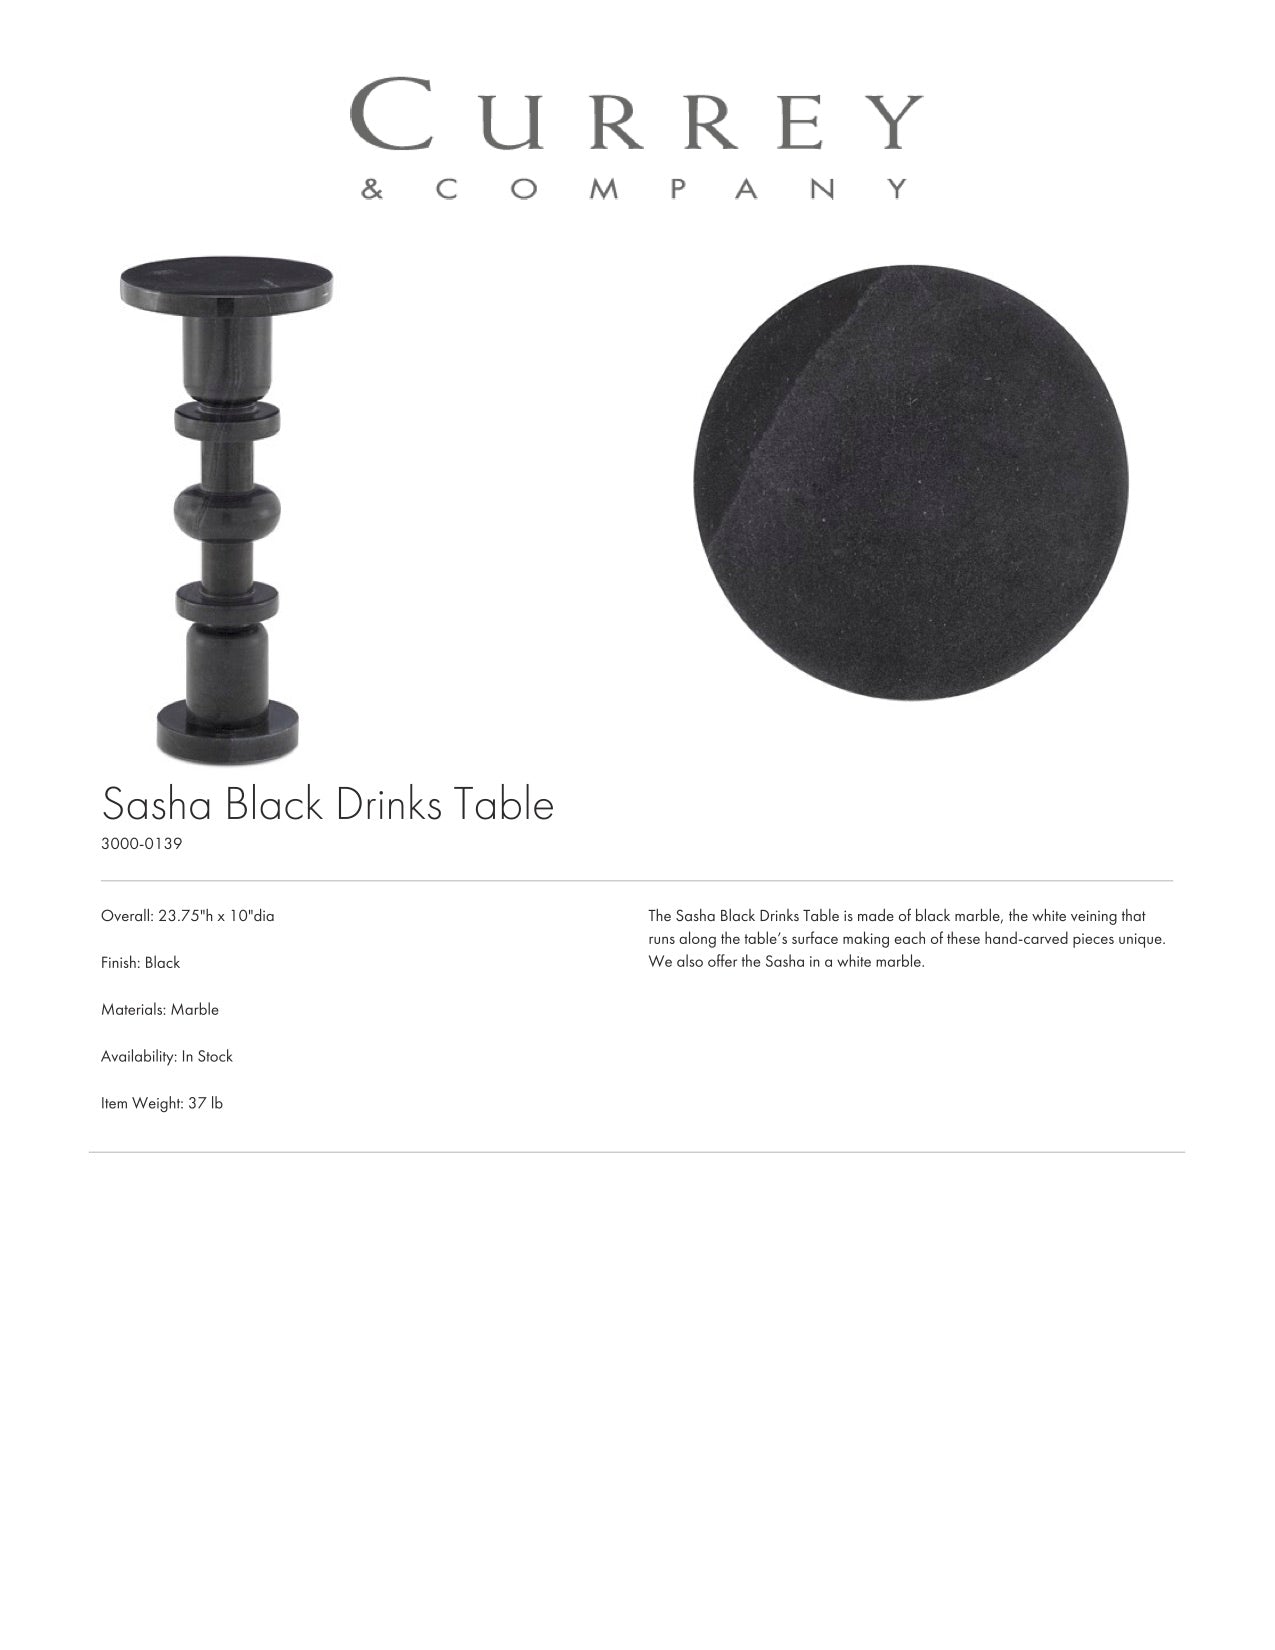 Currey & Company Sasha Black Drinks Table Tearsheet